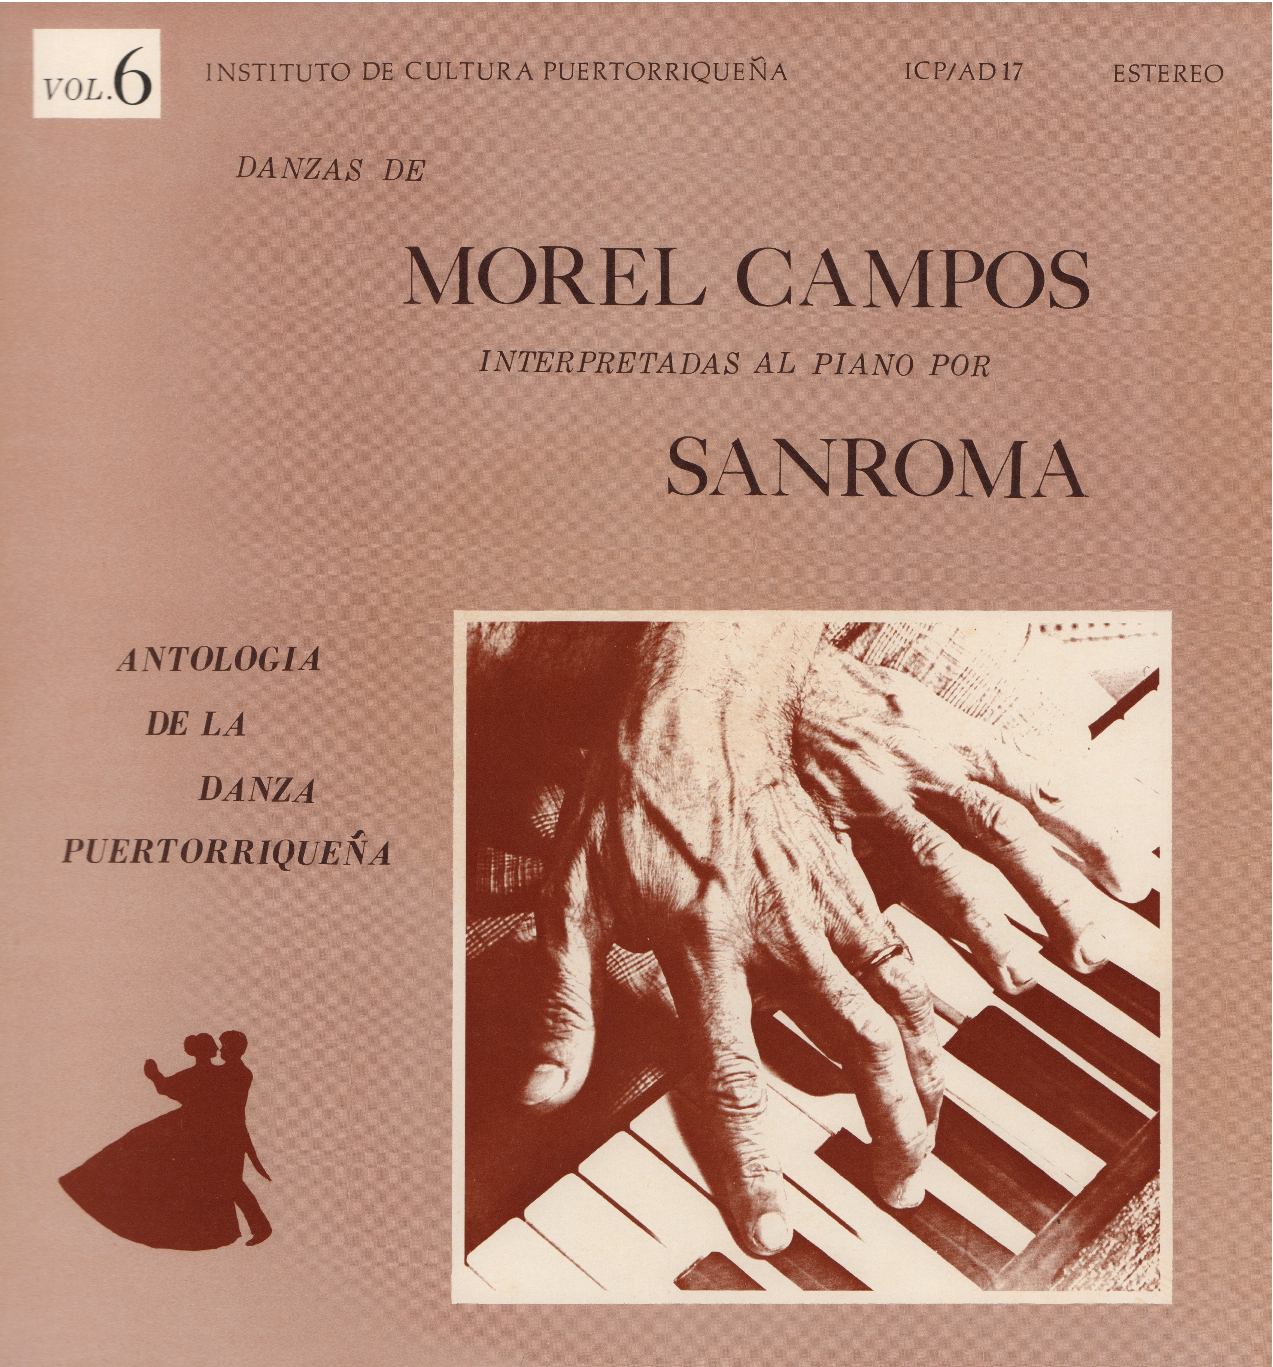 Danzas de Morel Campos Vol. 6